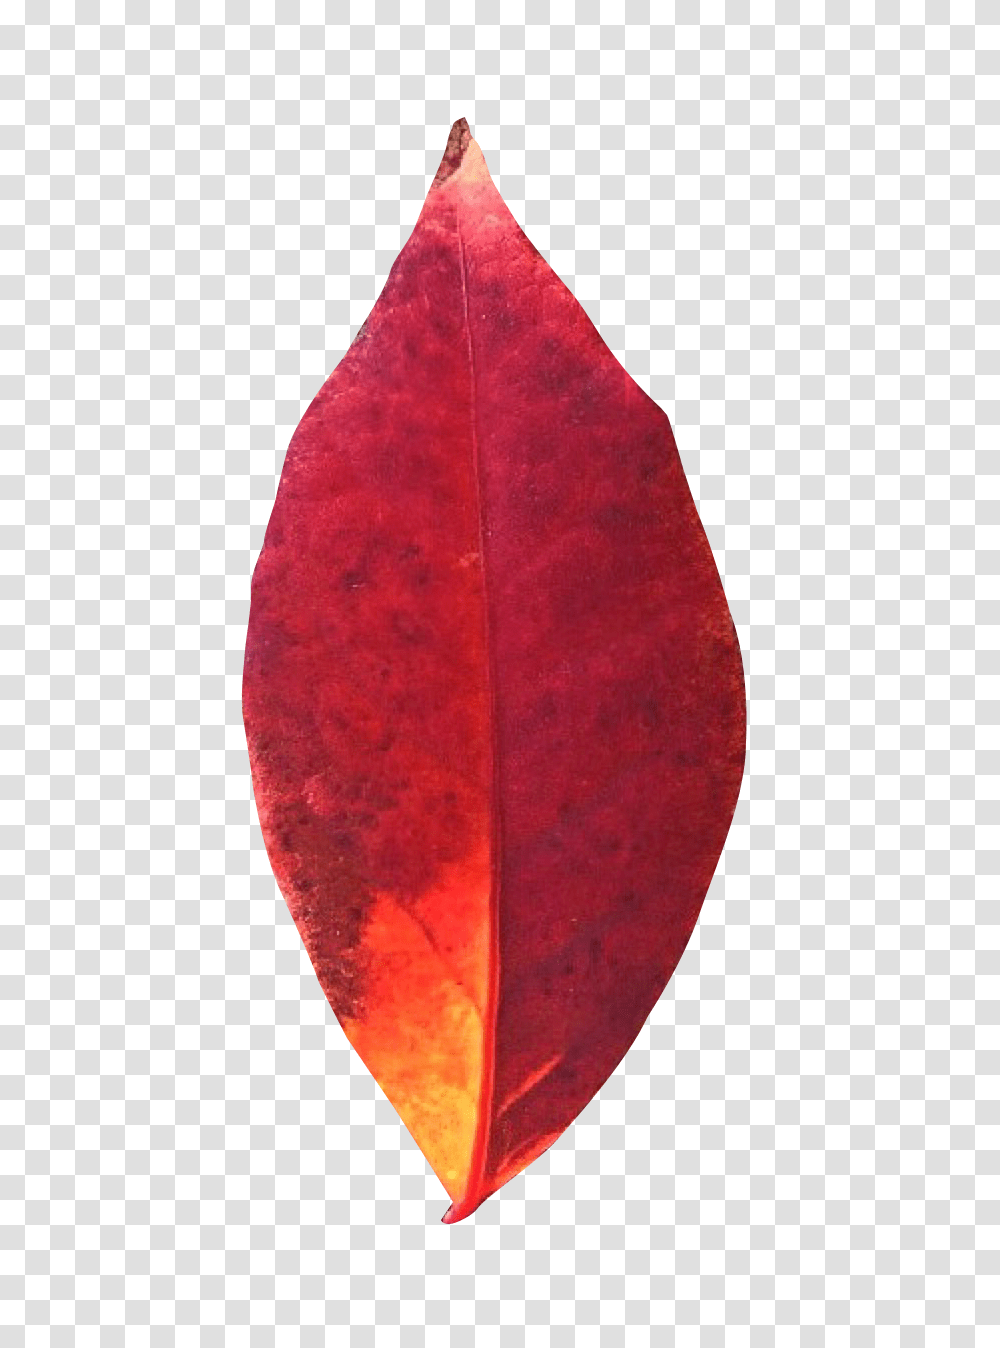 Leaf Images, Plant, Veins, Scarf Transparent Png